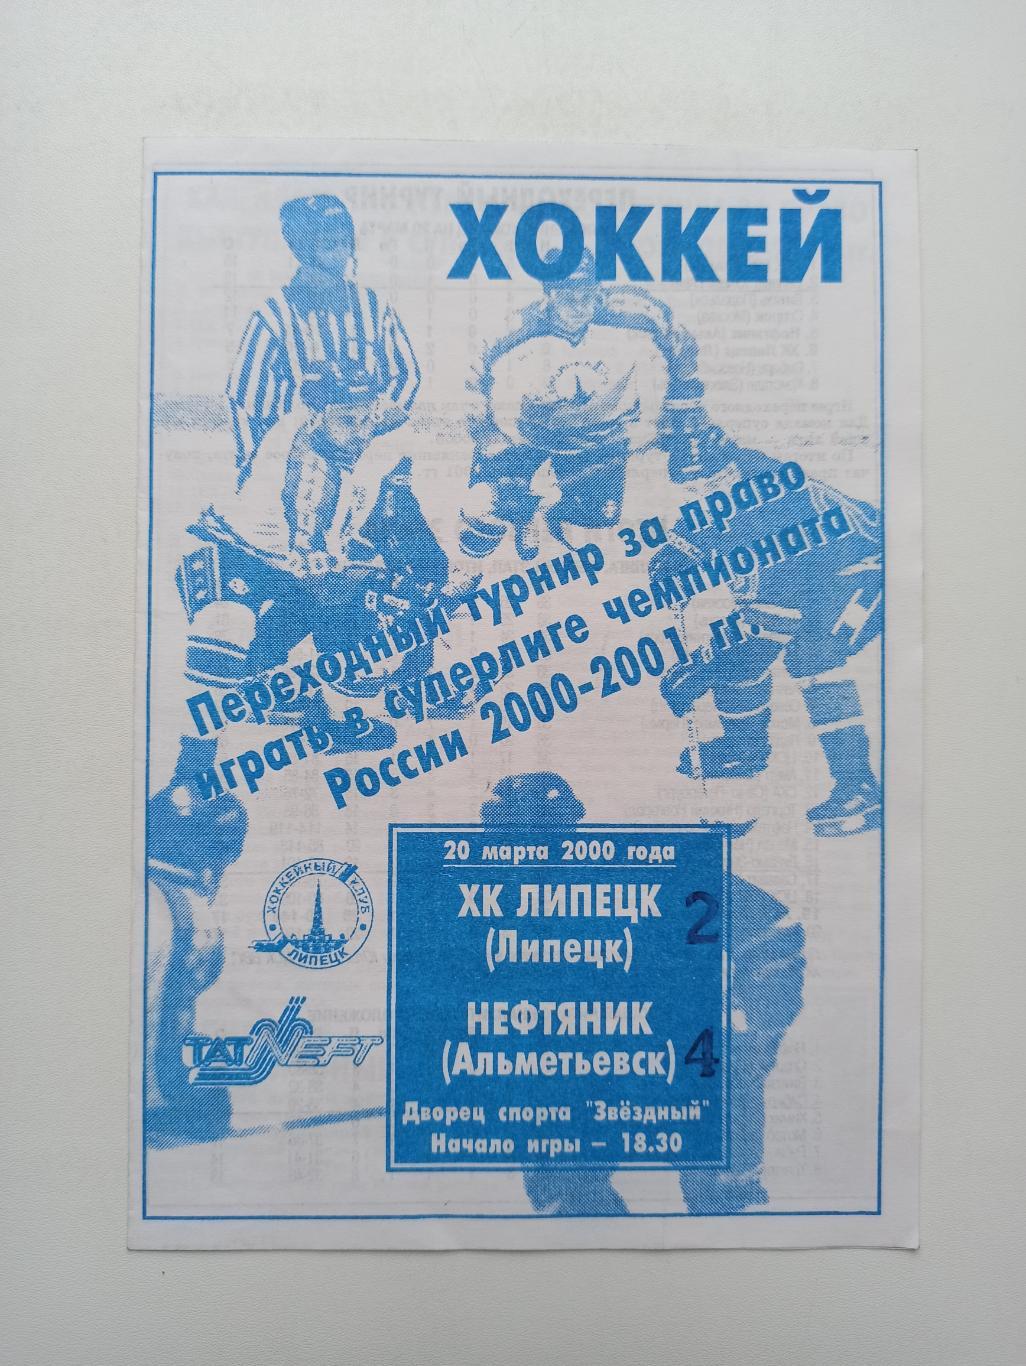 Хоккей, переходный турнир, ХК Липецк - Нефтяник (Альметьевск), 2000г.